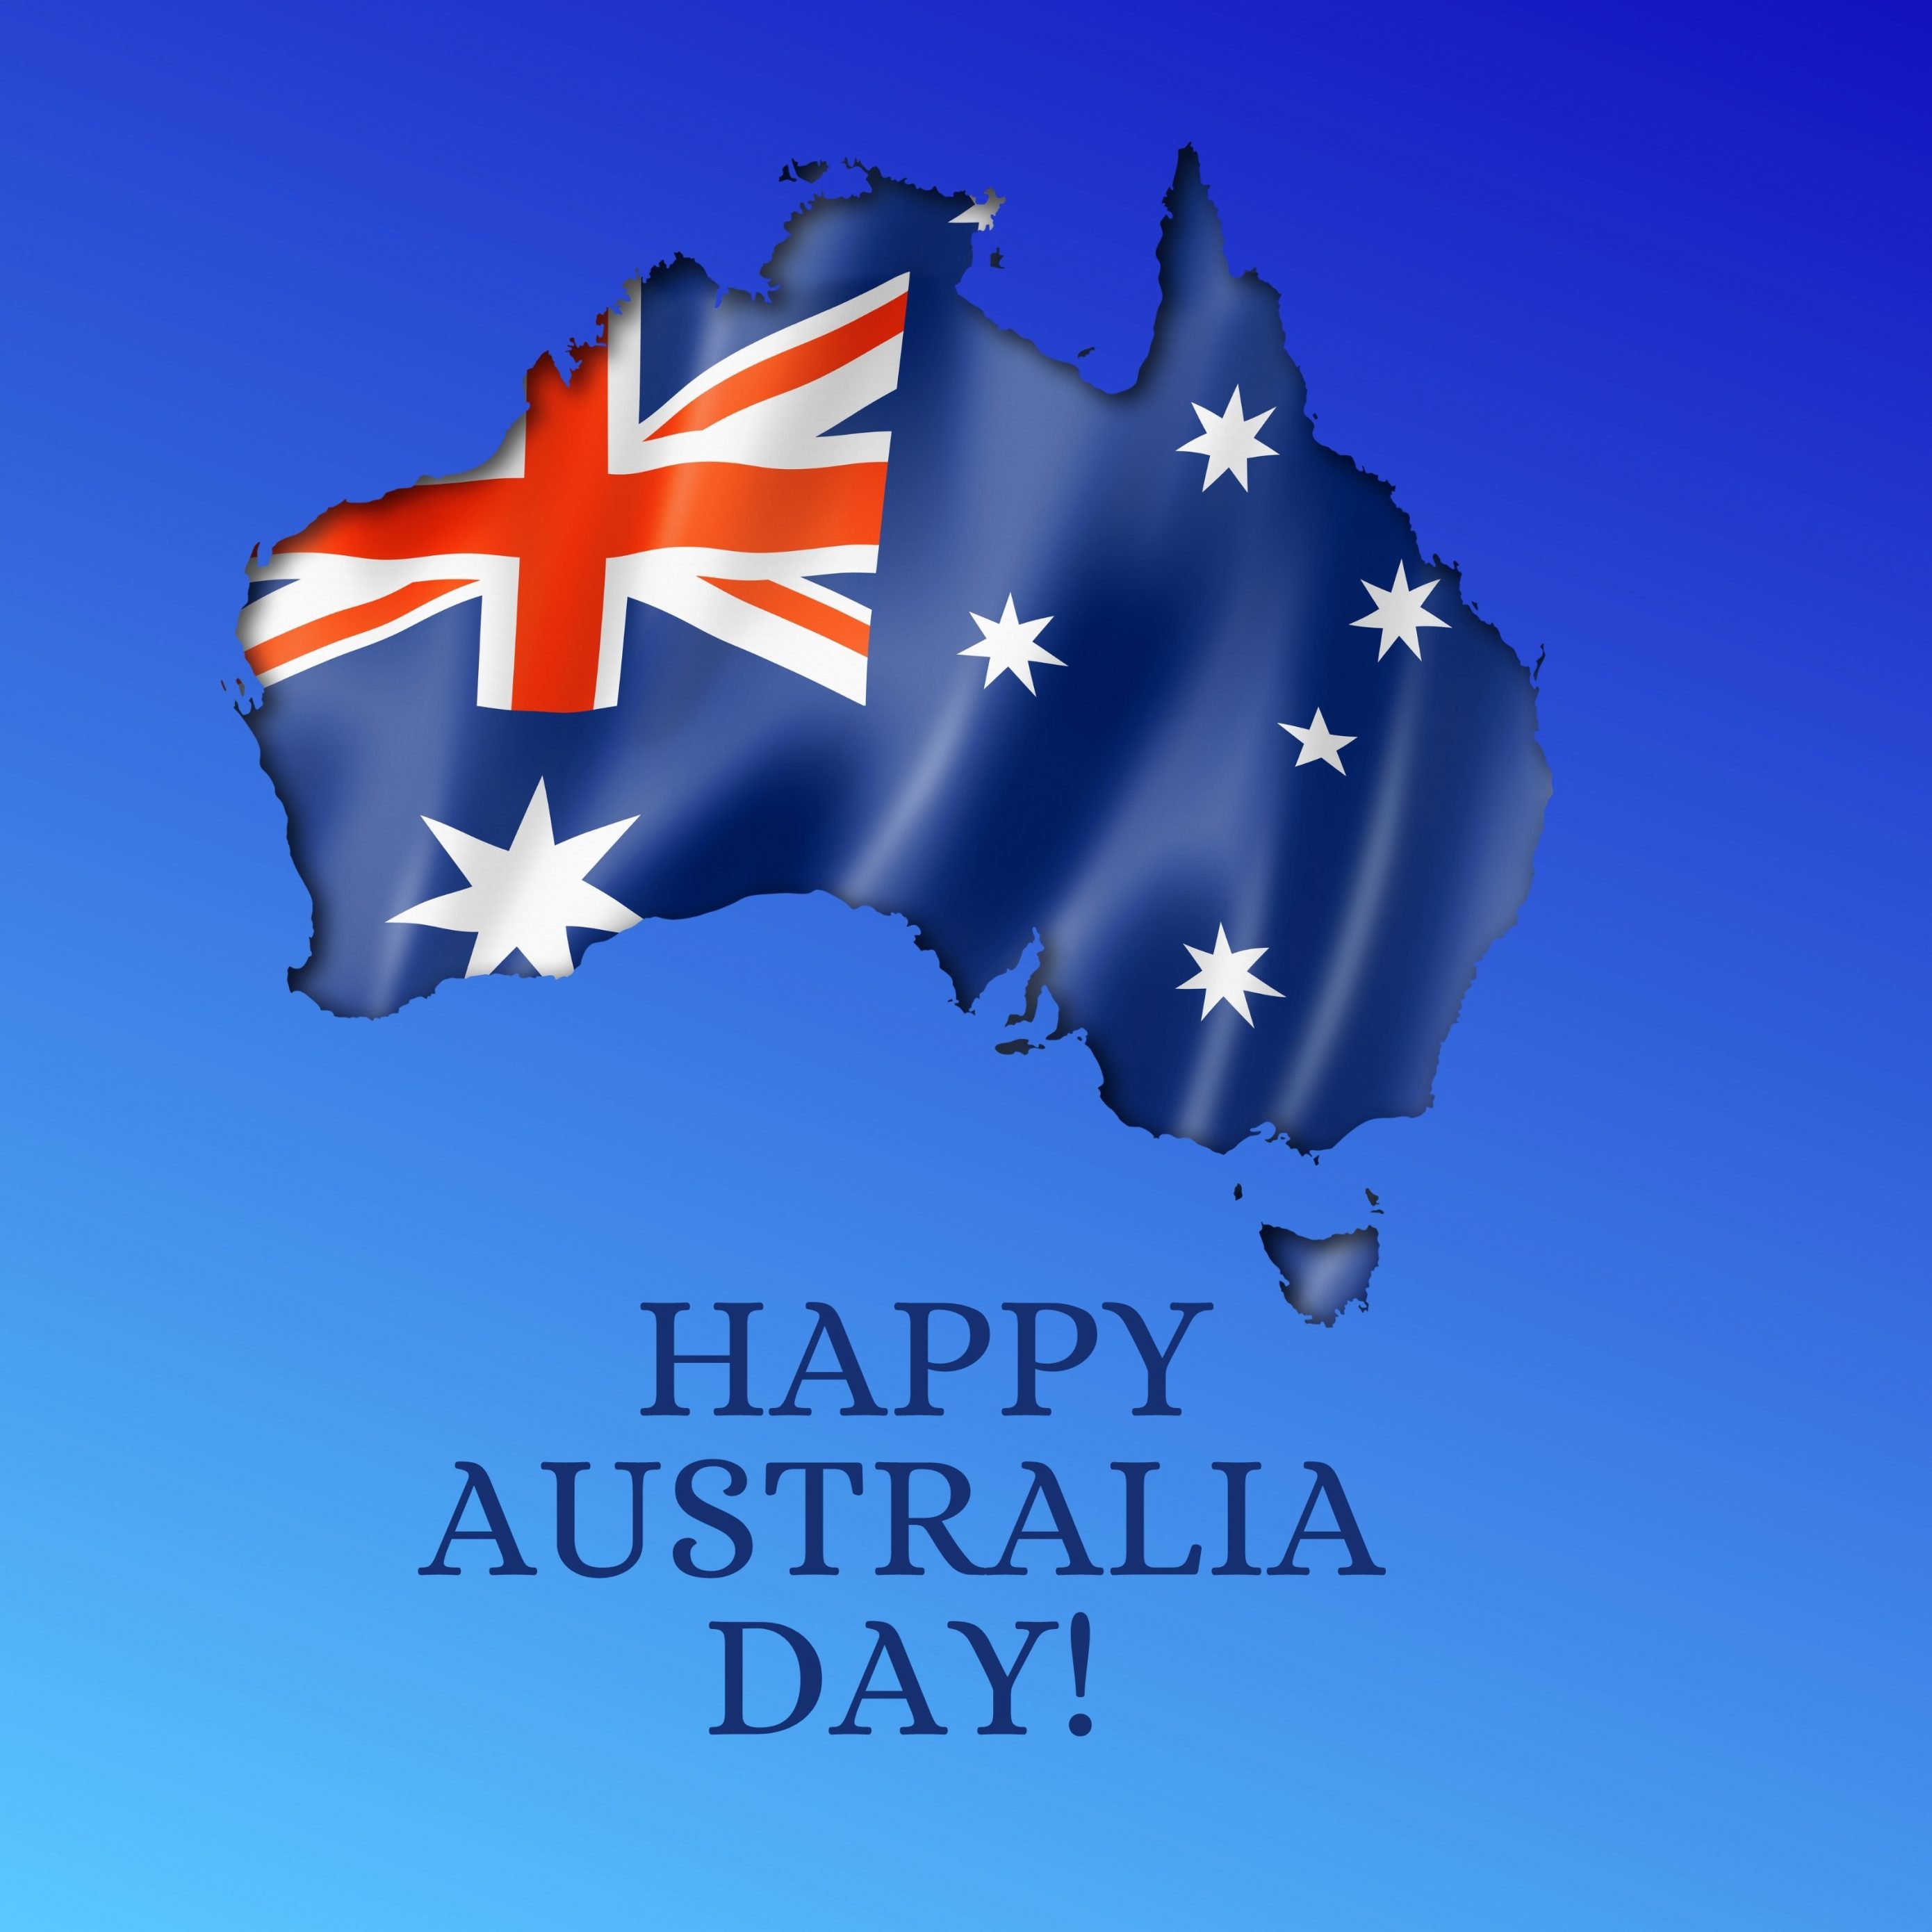 2780x2780 Parallax wallpaper 4k Happy Australia Day iPad Wallpaper 2780x2780 pixels resolution